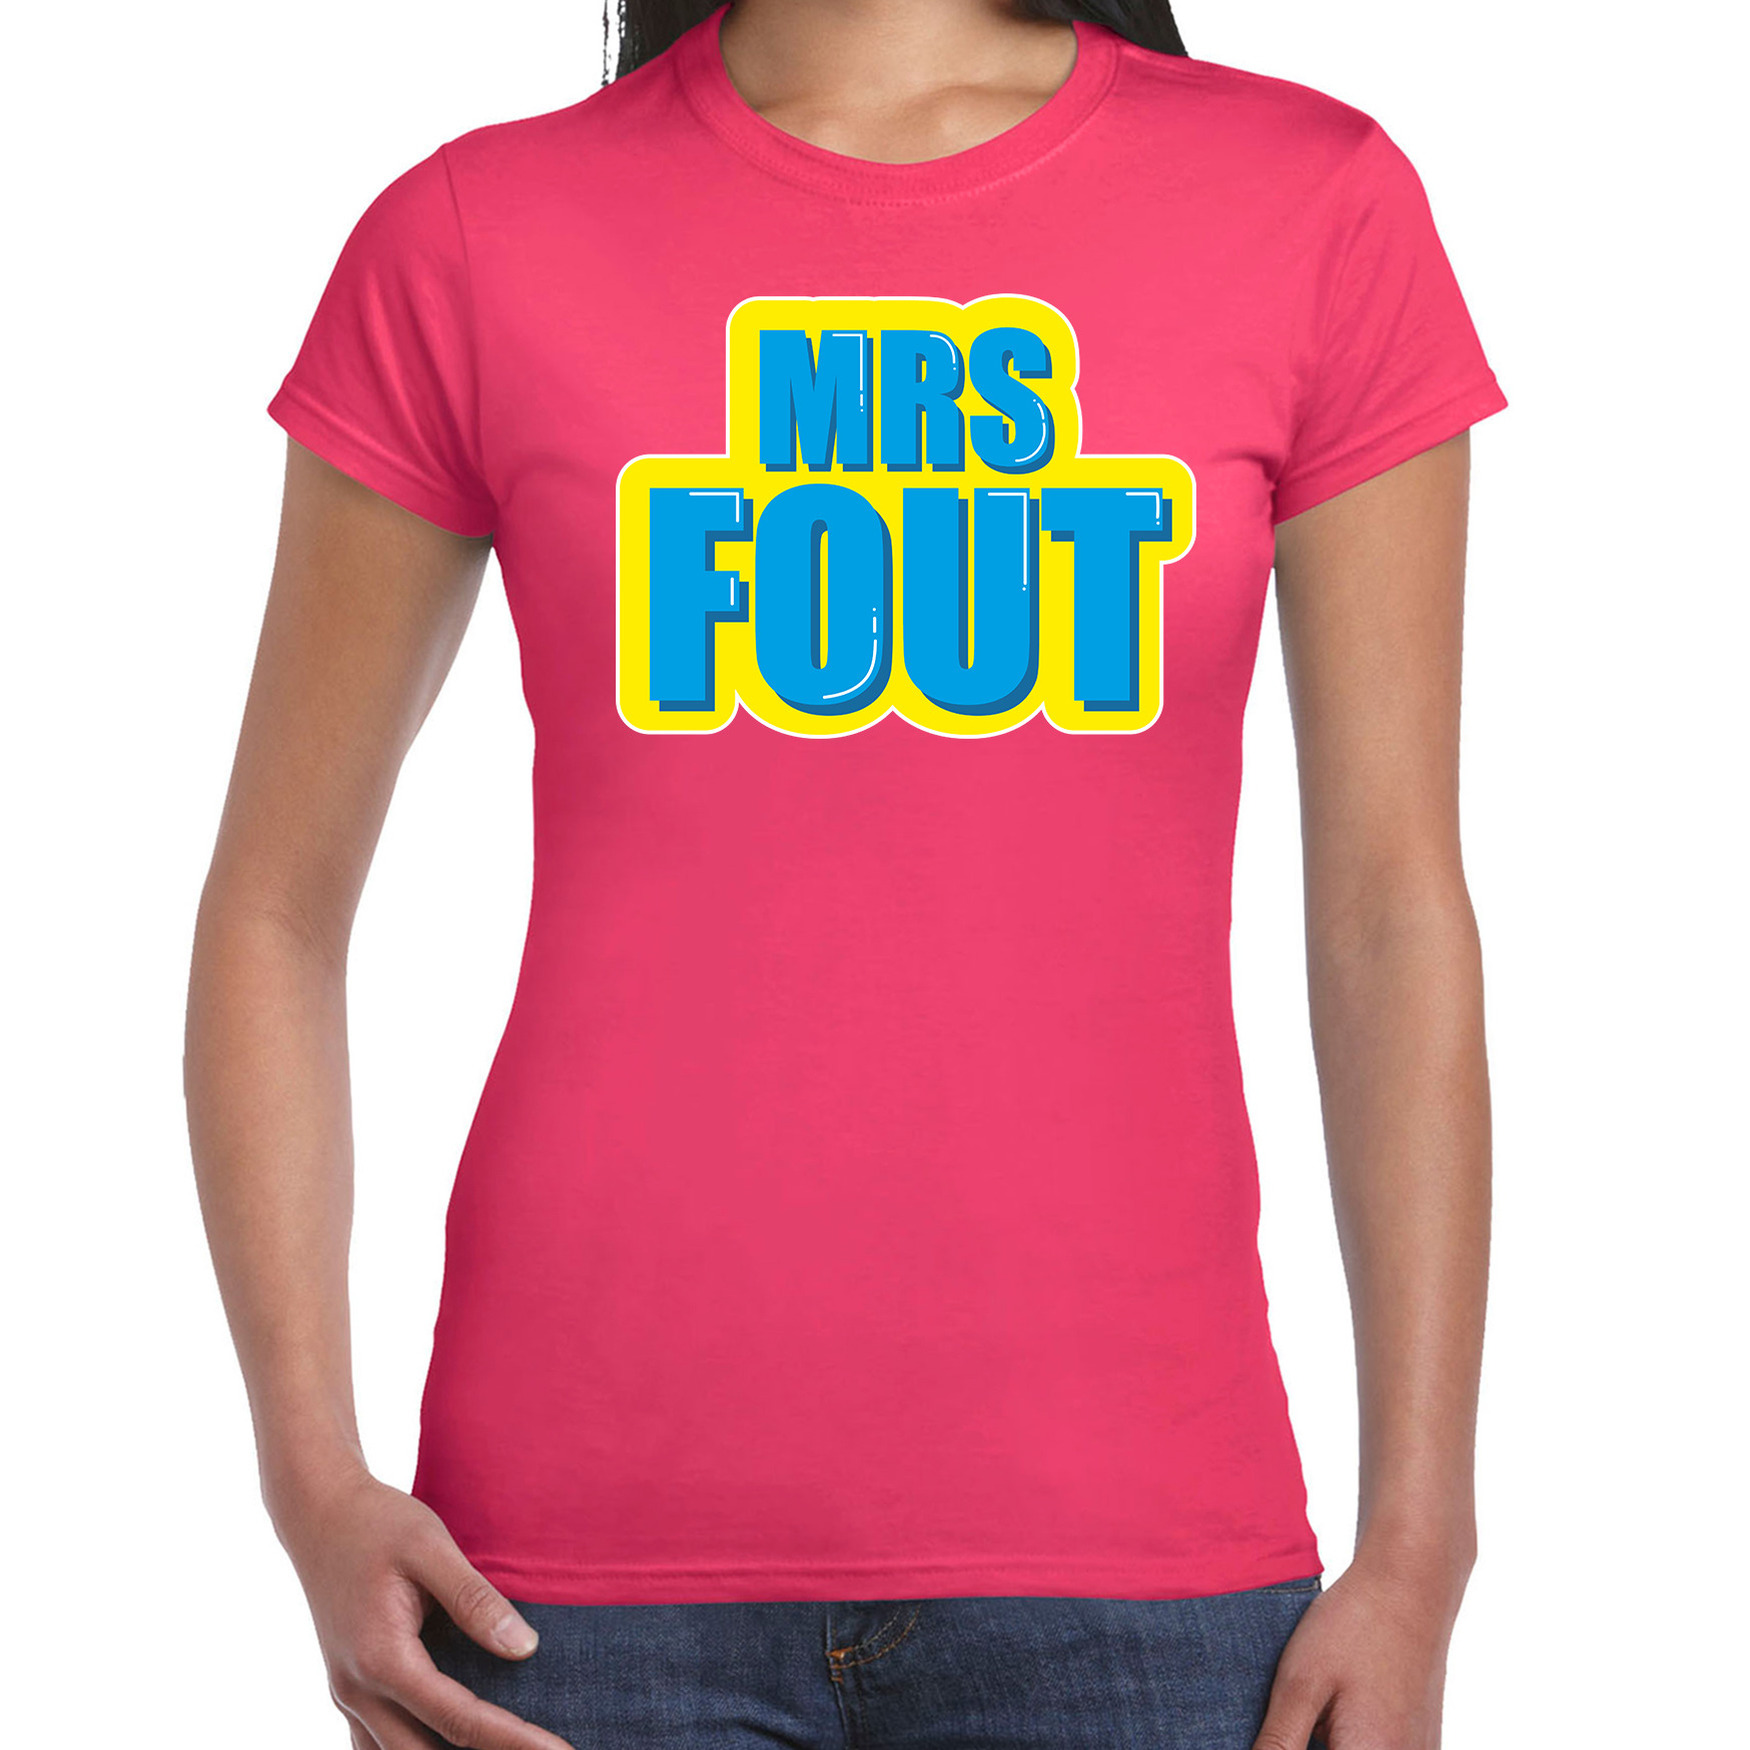 Mrs. Fout fun tekst t-shirt voor dames roze met blauwe opdruk